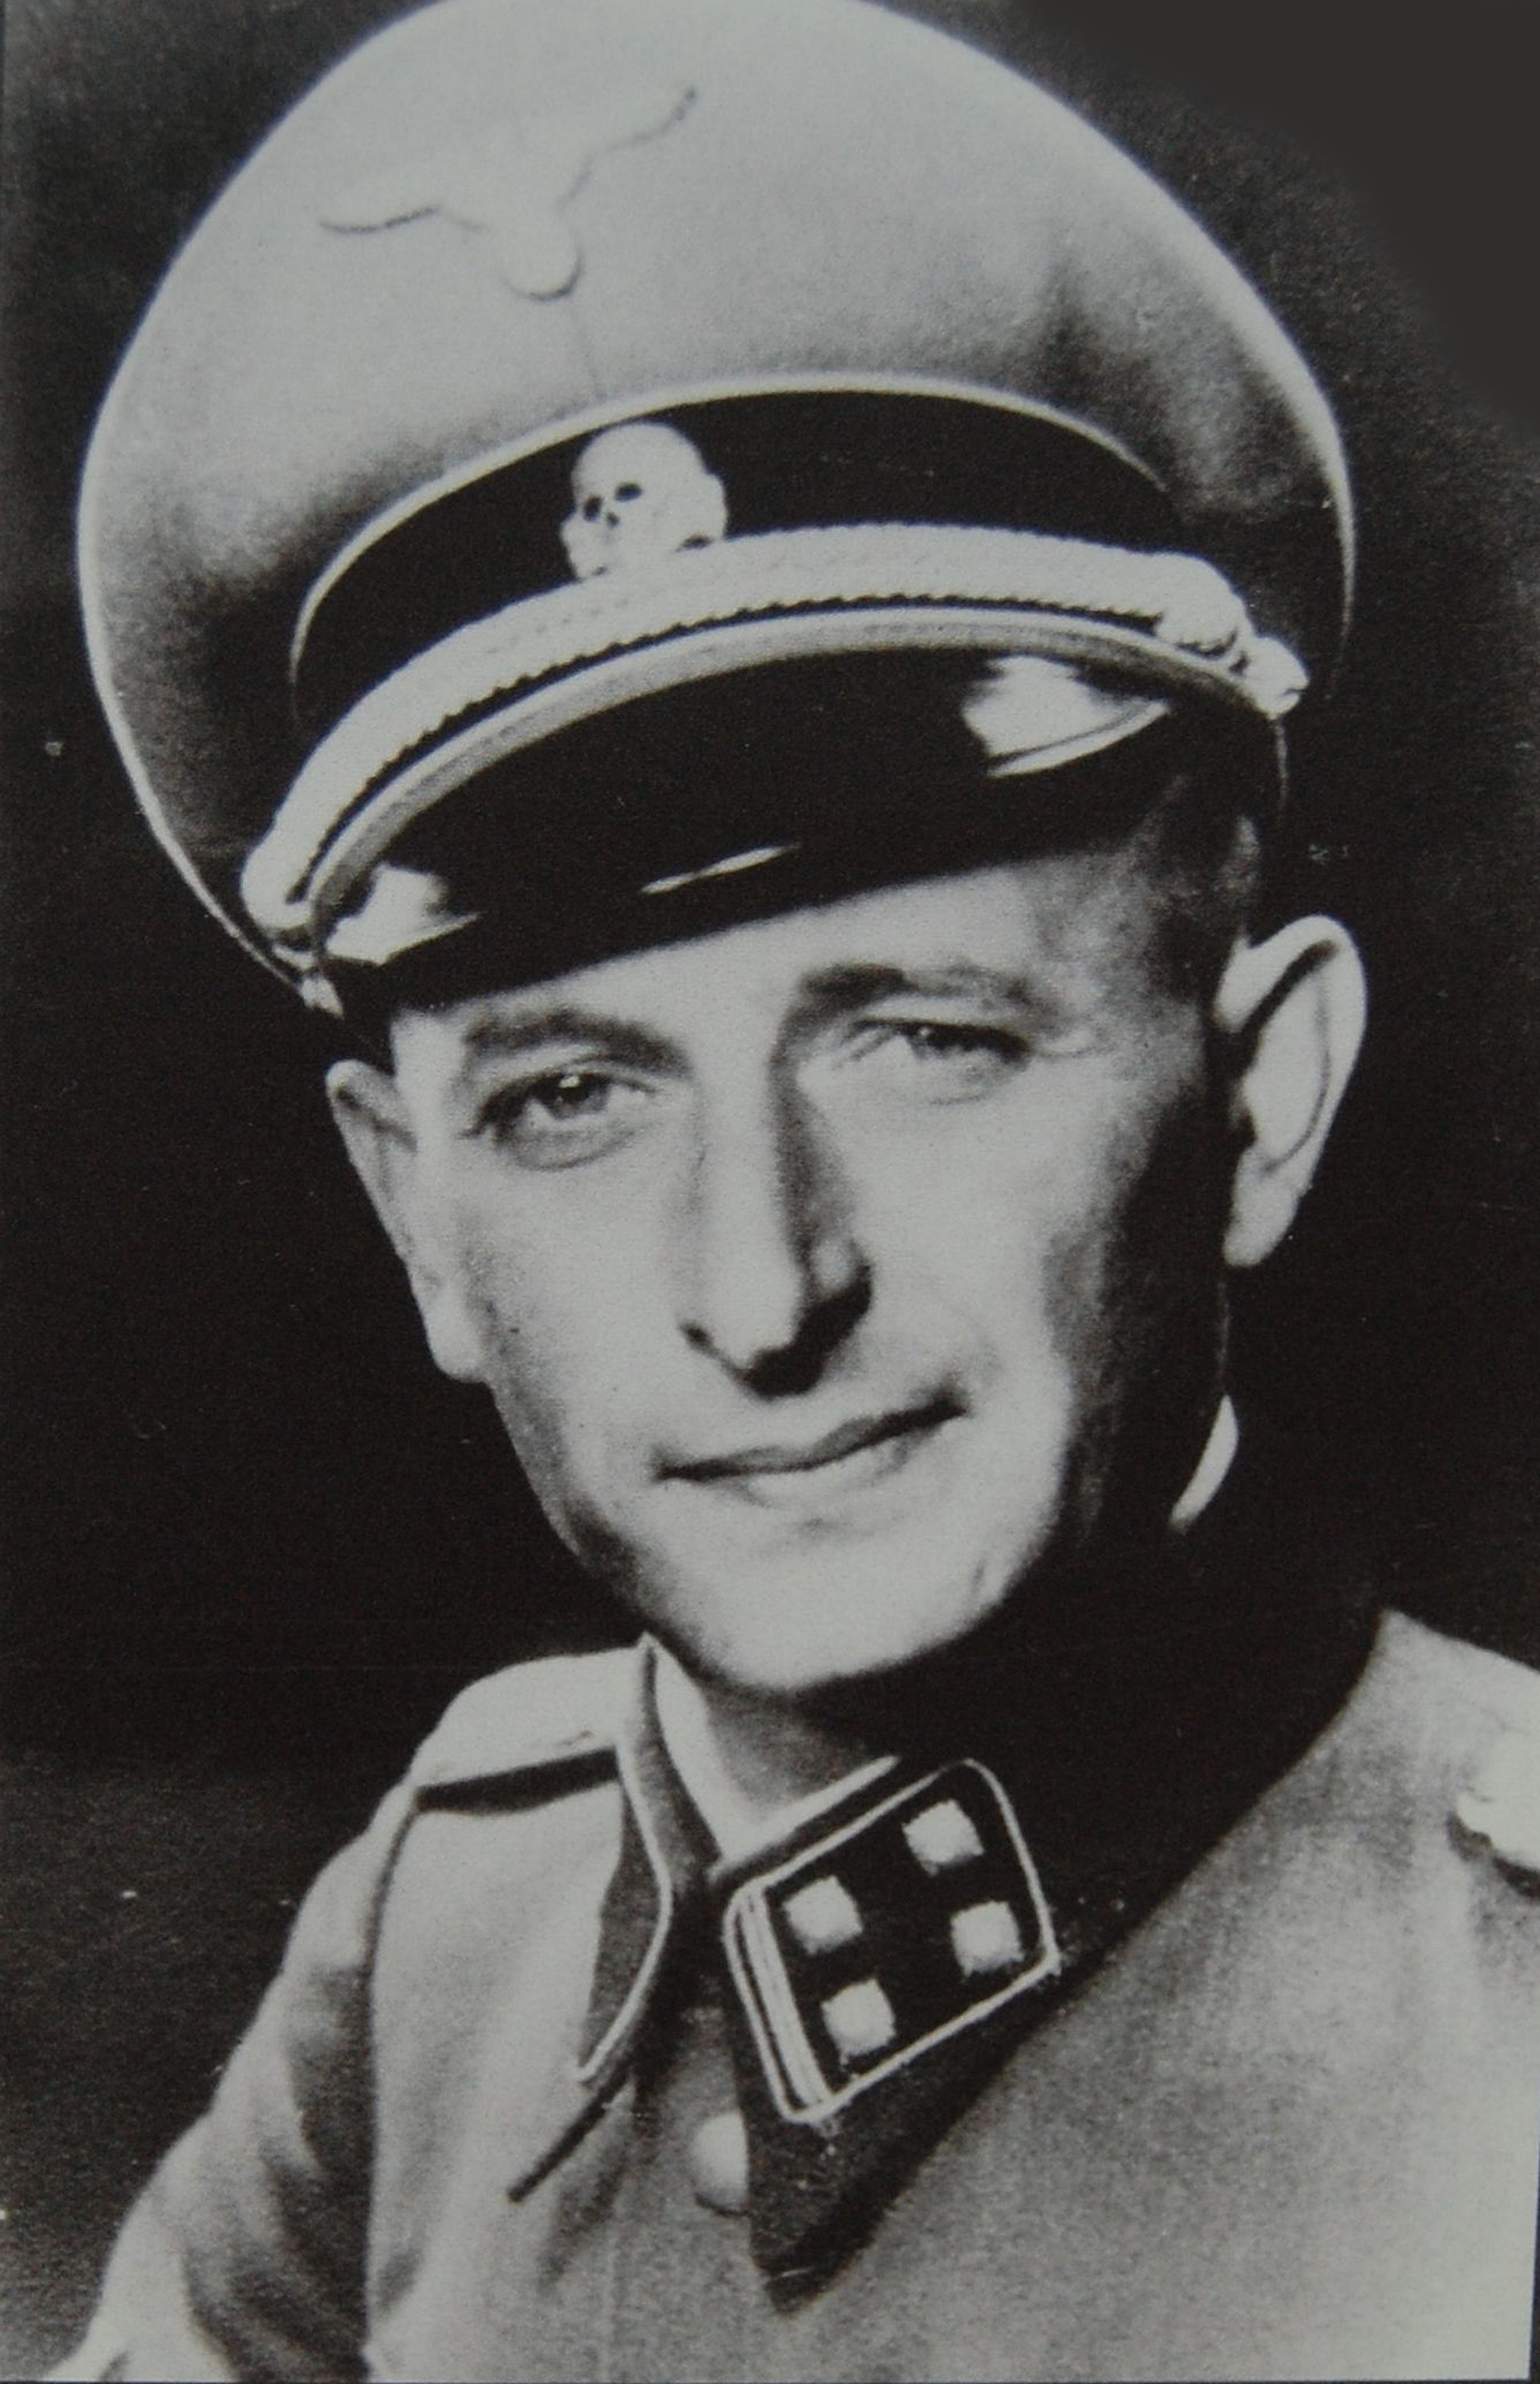 Capo de las SS leader y criminal de guerra, Adolf Eichmann fue el arquitecto del Holocausto y el nazi que se ufanaba de haber ordenado la muerte de seis millones de personas. Este es su retrato oficial de 1942 (Fine Art Images/Heritage Images/Getty Images)